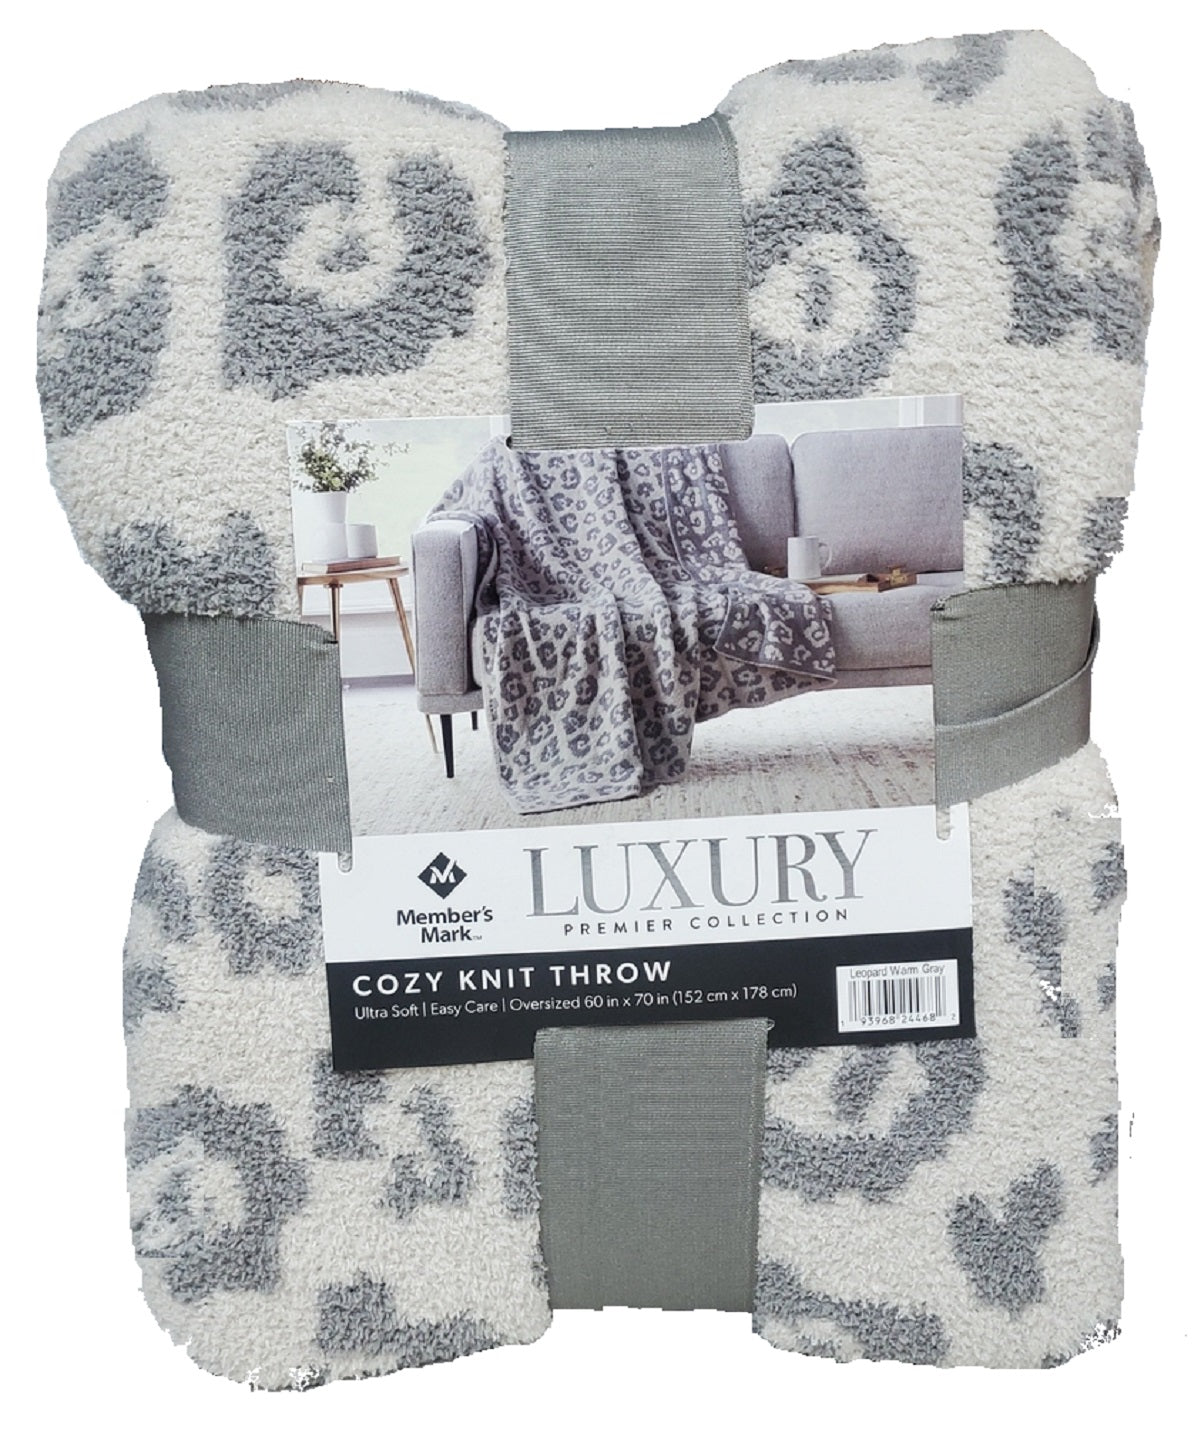 Members Mark Luxury Cozy Knit Throw 60in X 70in Leopard Warm Gray